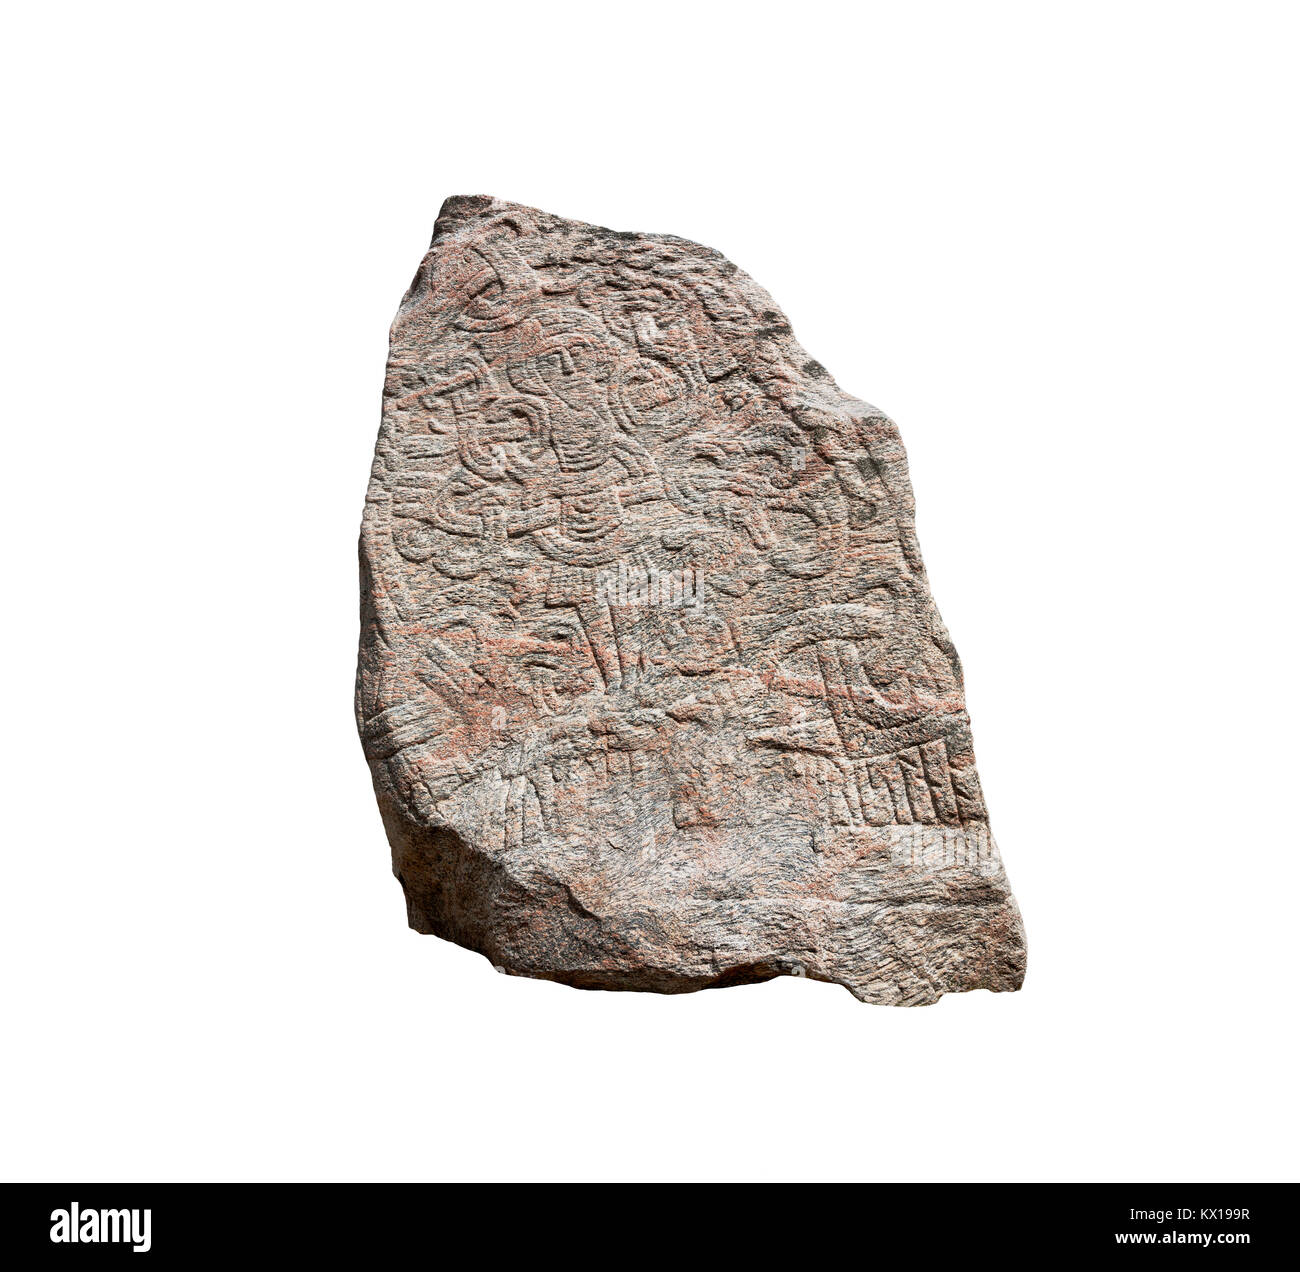 Die Gestalt Christi auf der großen Jelling rune Stone von König Harald Bluetooth in der 960 s angehoben. Andere Seite von runic Text. Isolierte schneiden Sie auf Weiß Stockfoto